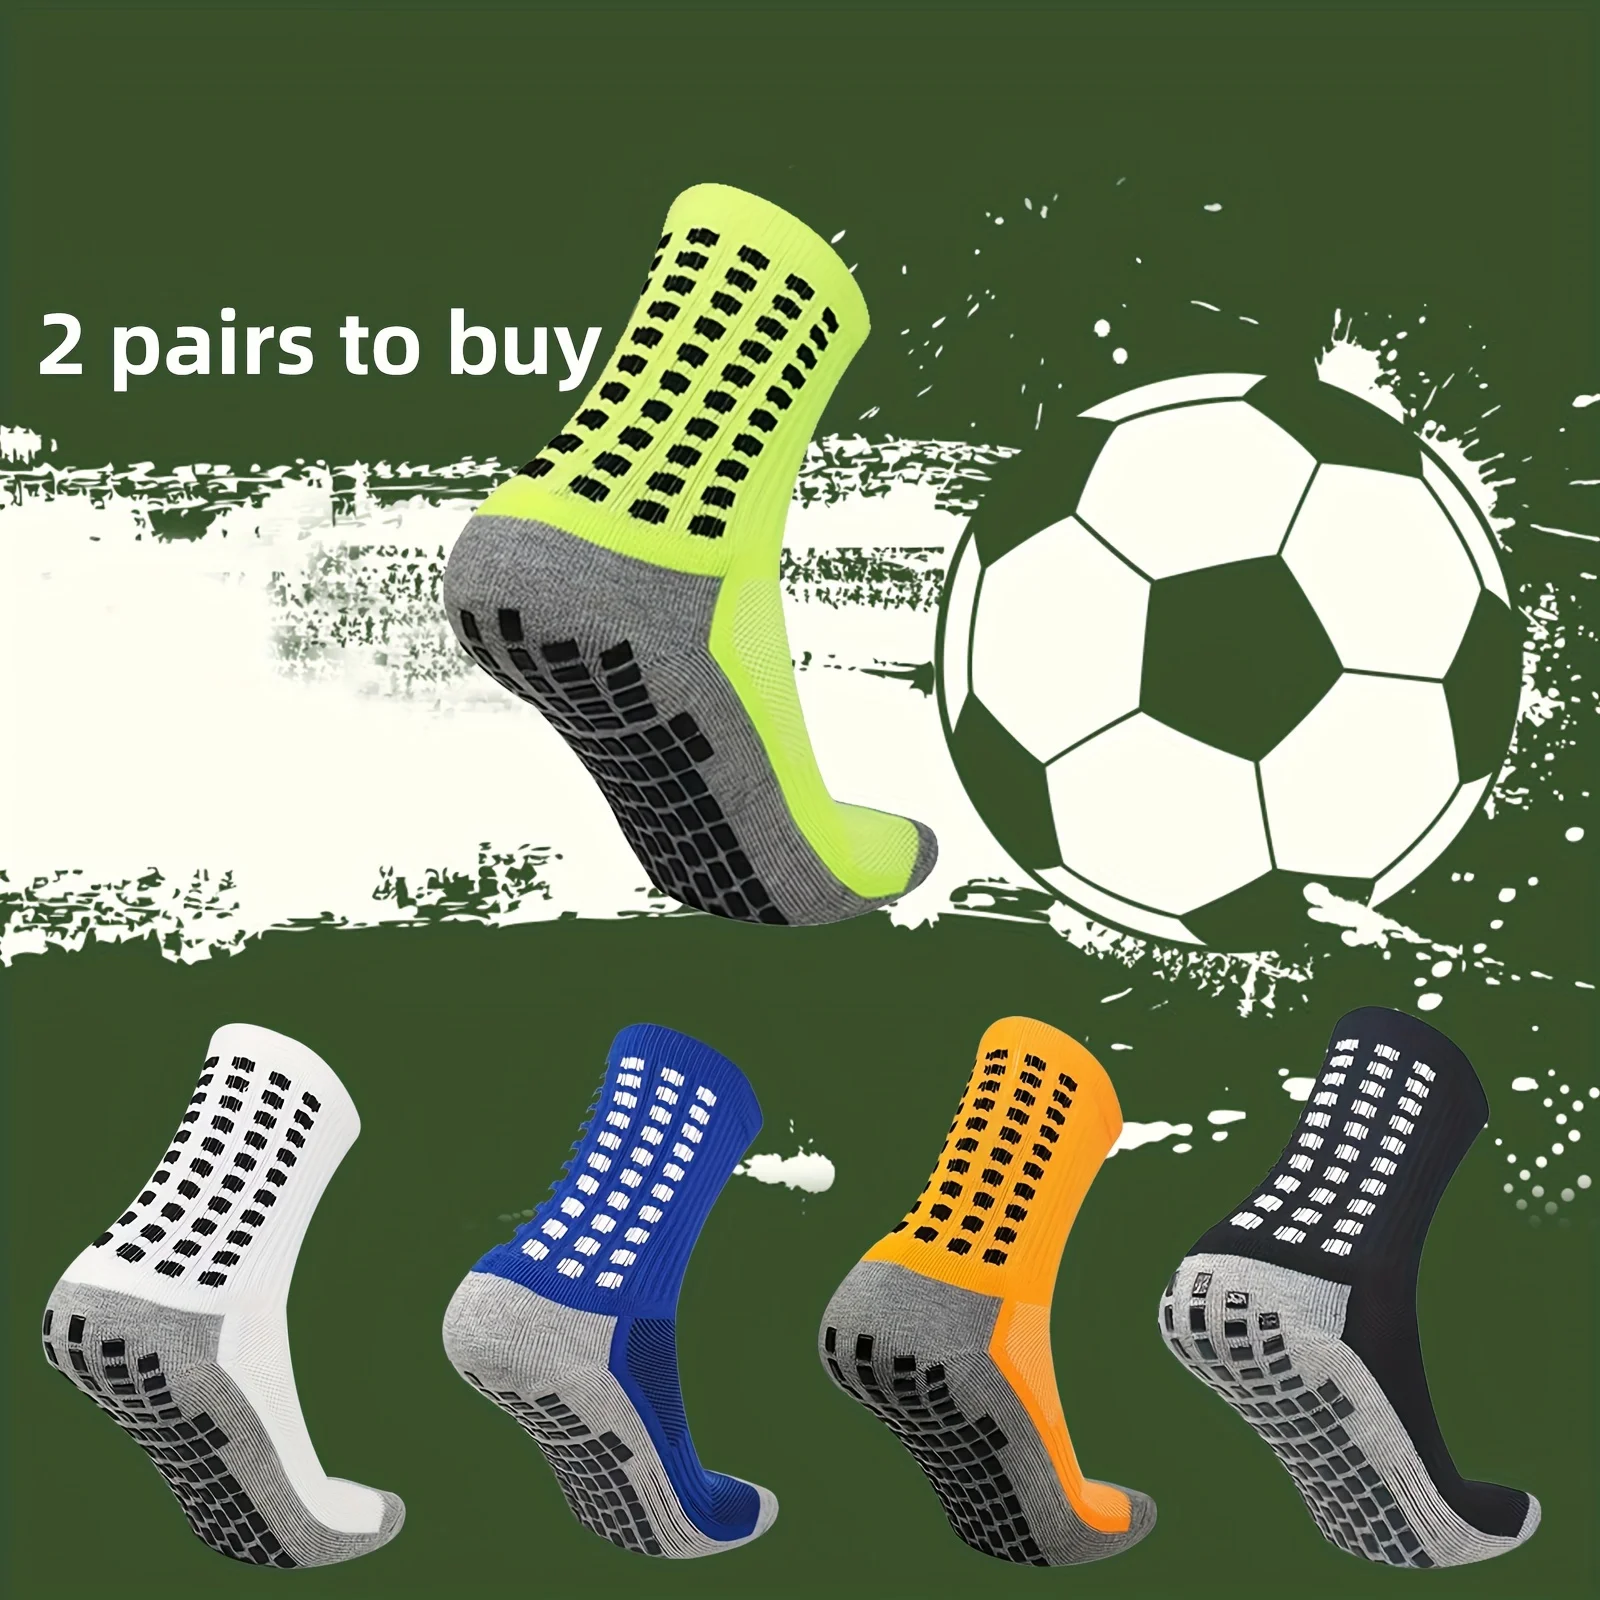 

Men's Football Soccer Socks Sports Cycling Grip Socks Anti Slip Non Slip Grip Pads for Football Basketball New